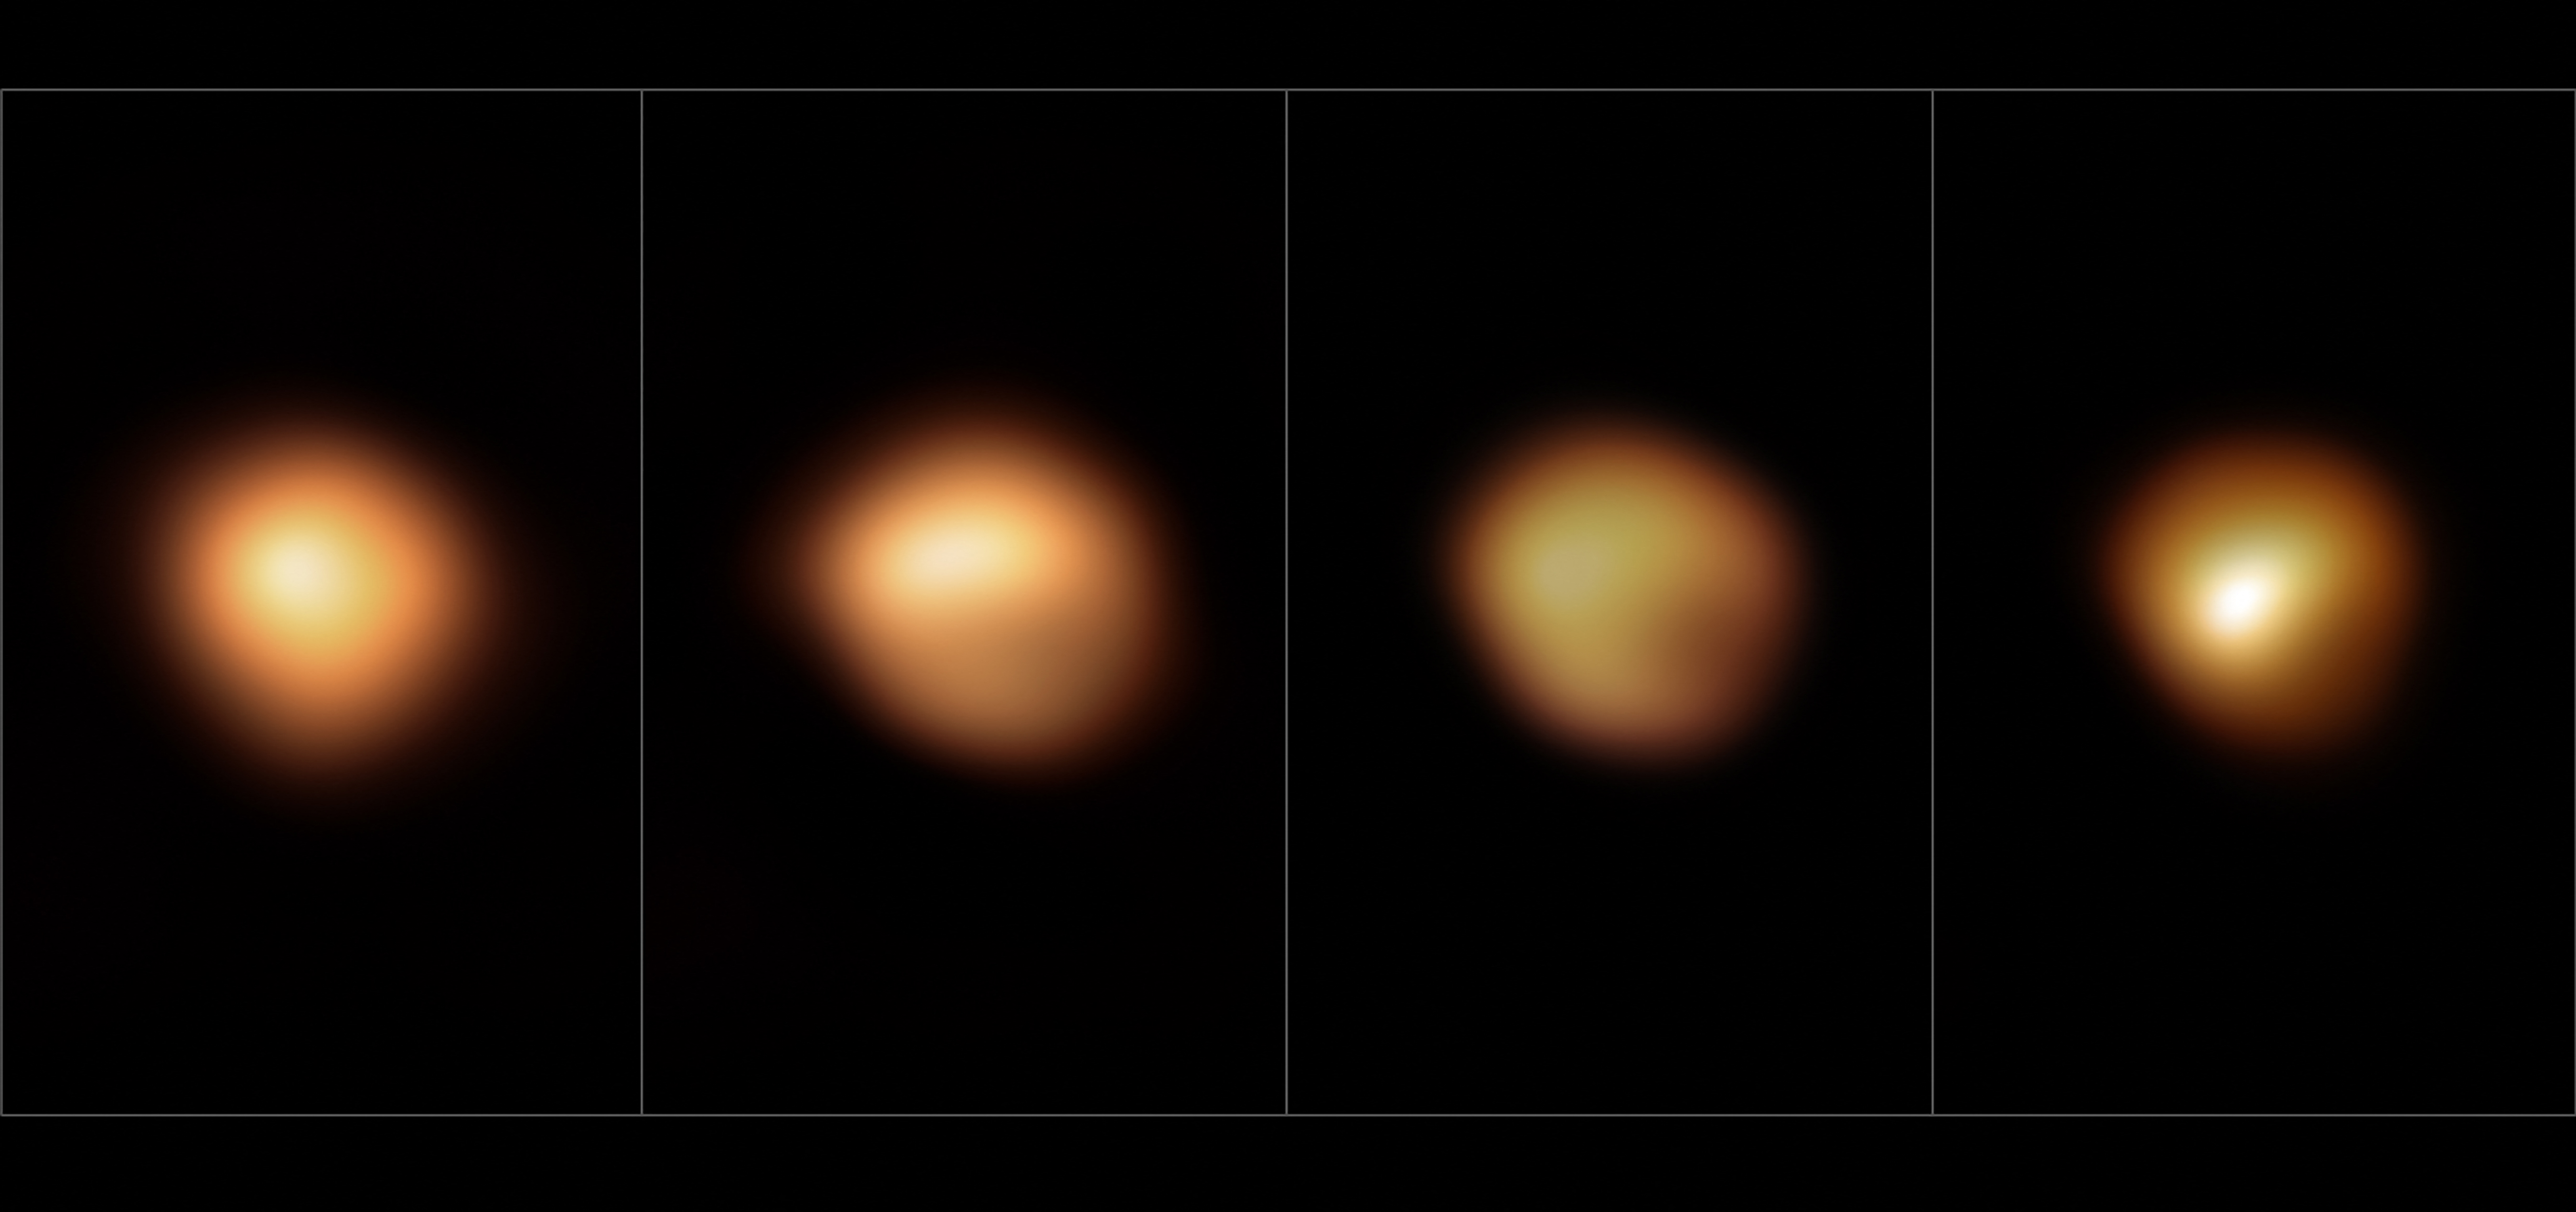 Egy japán időjárási műholdnak köszönhető, hogy sikerült megfejteni a Betelgeuze elhalványodásának rejtélyét